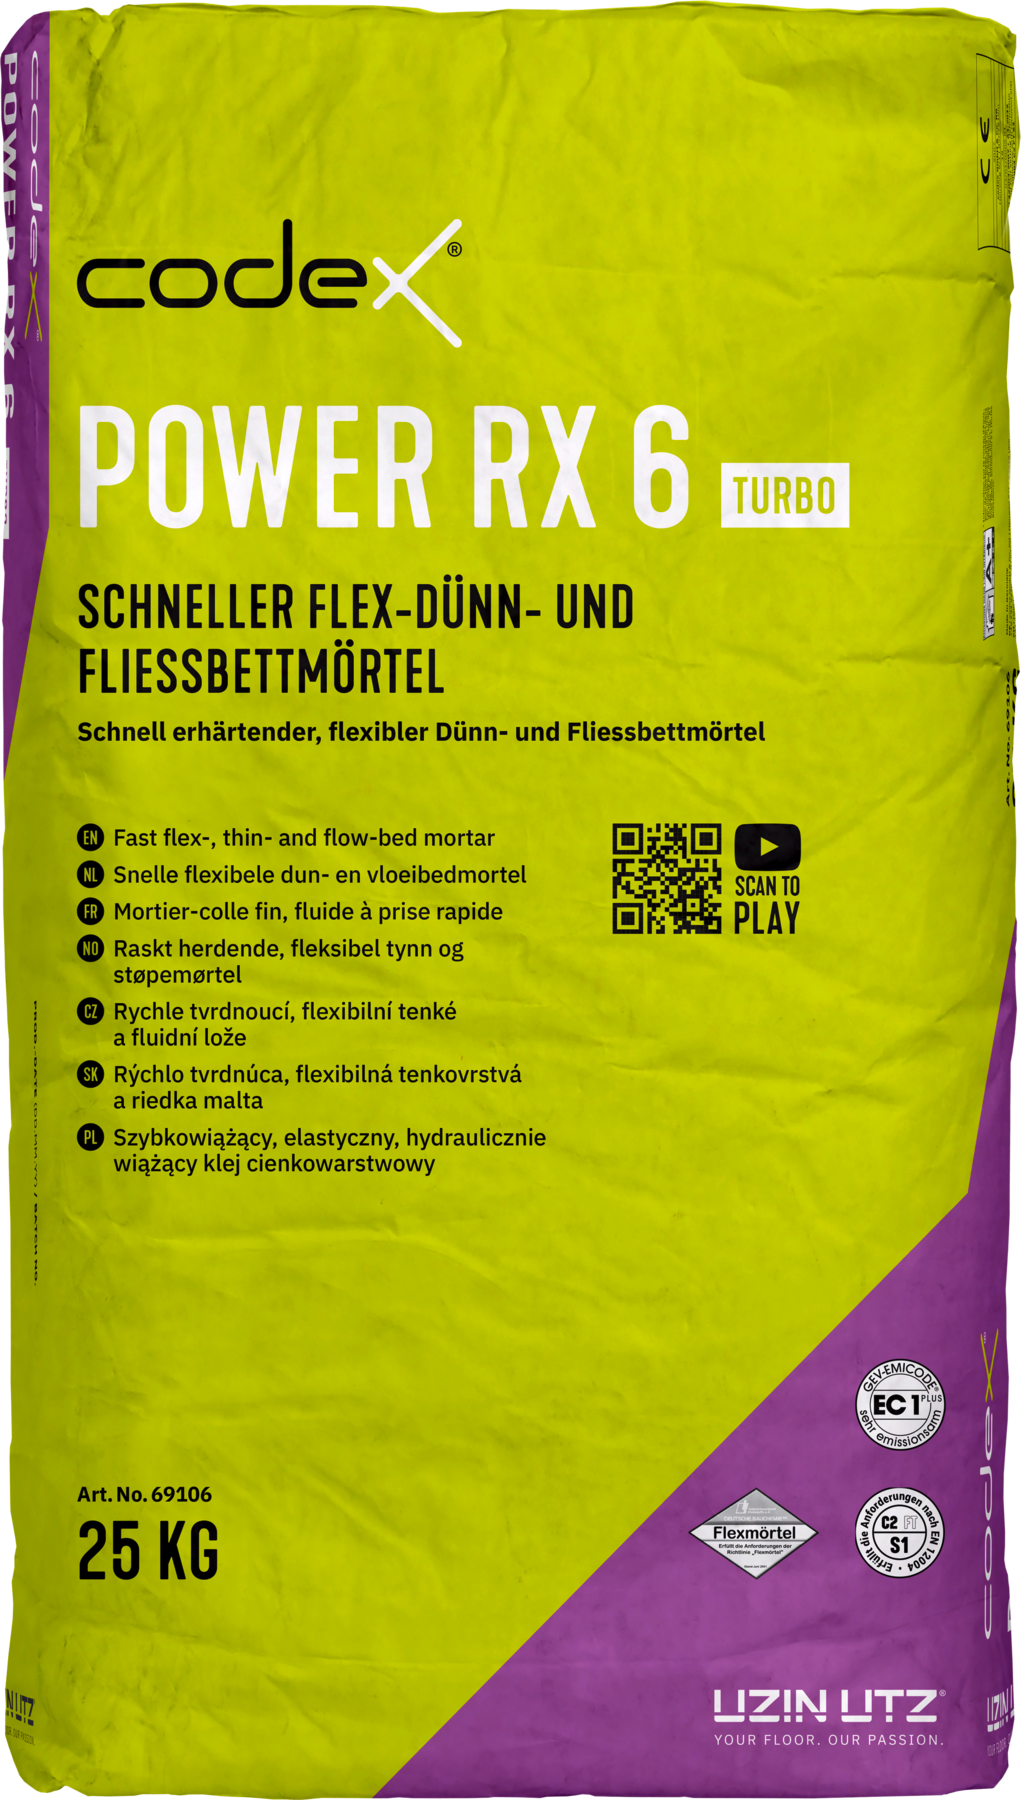 Codex Power RX 6 Turbo 25 kg Flex-, Dünn- und Fließbettmörtel schnell